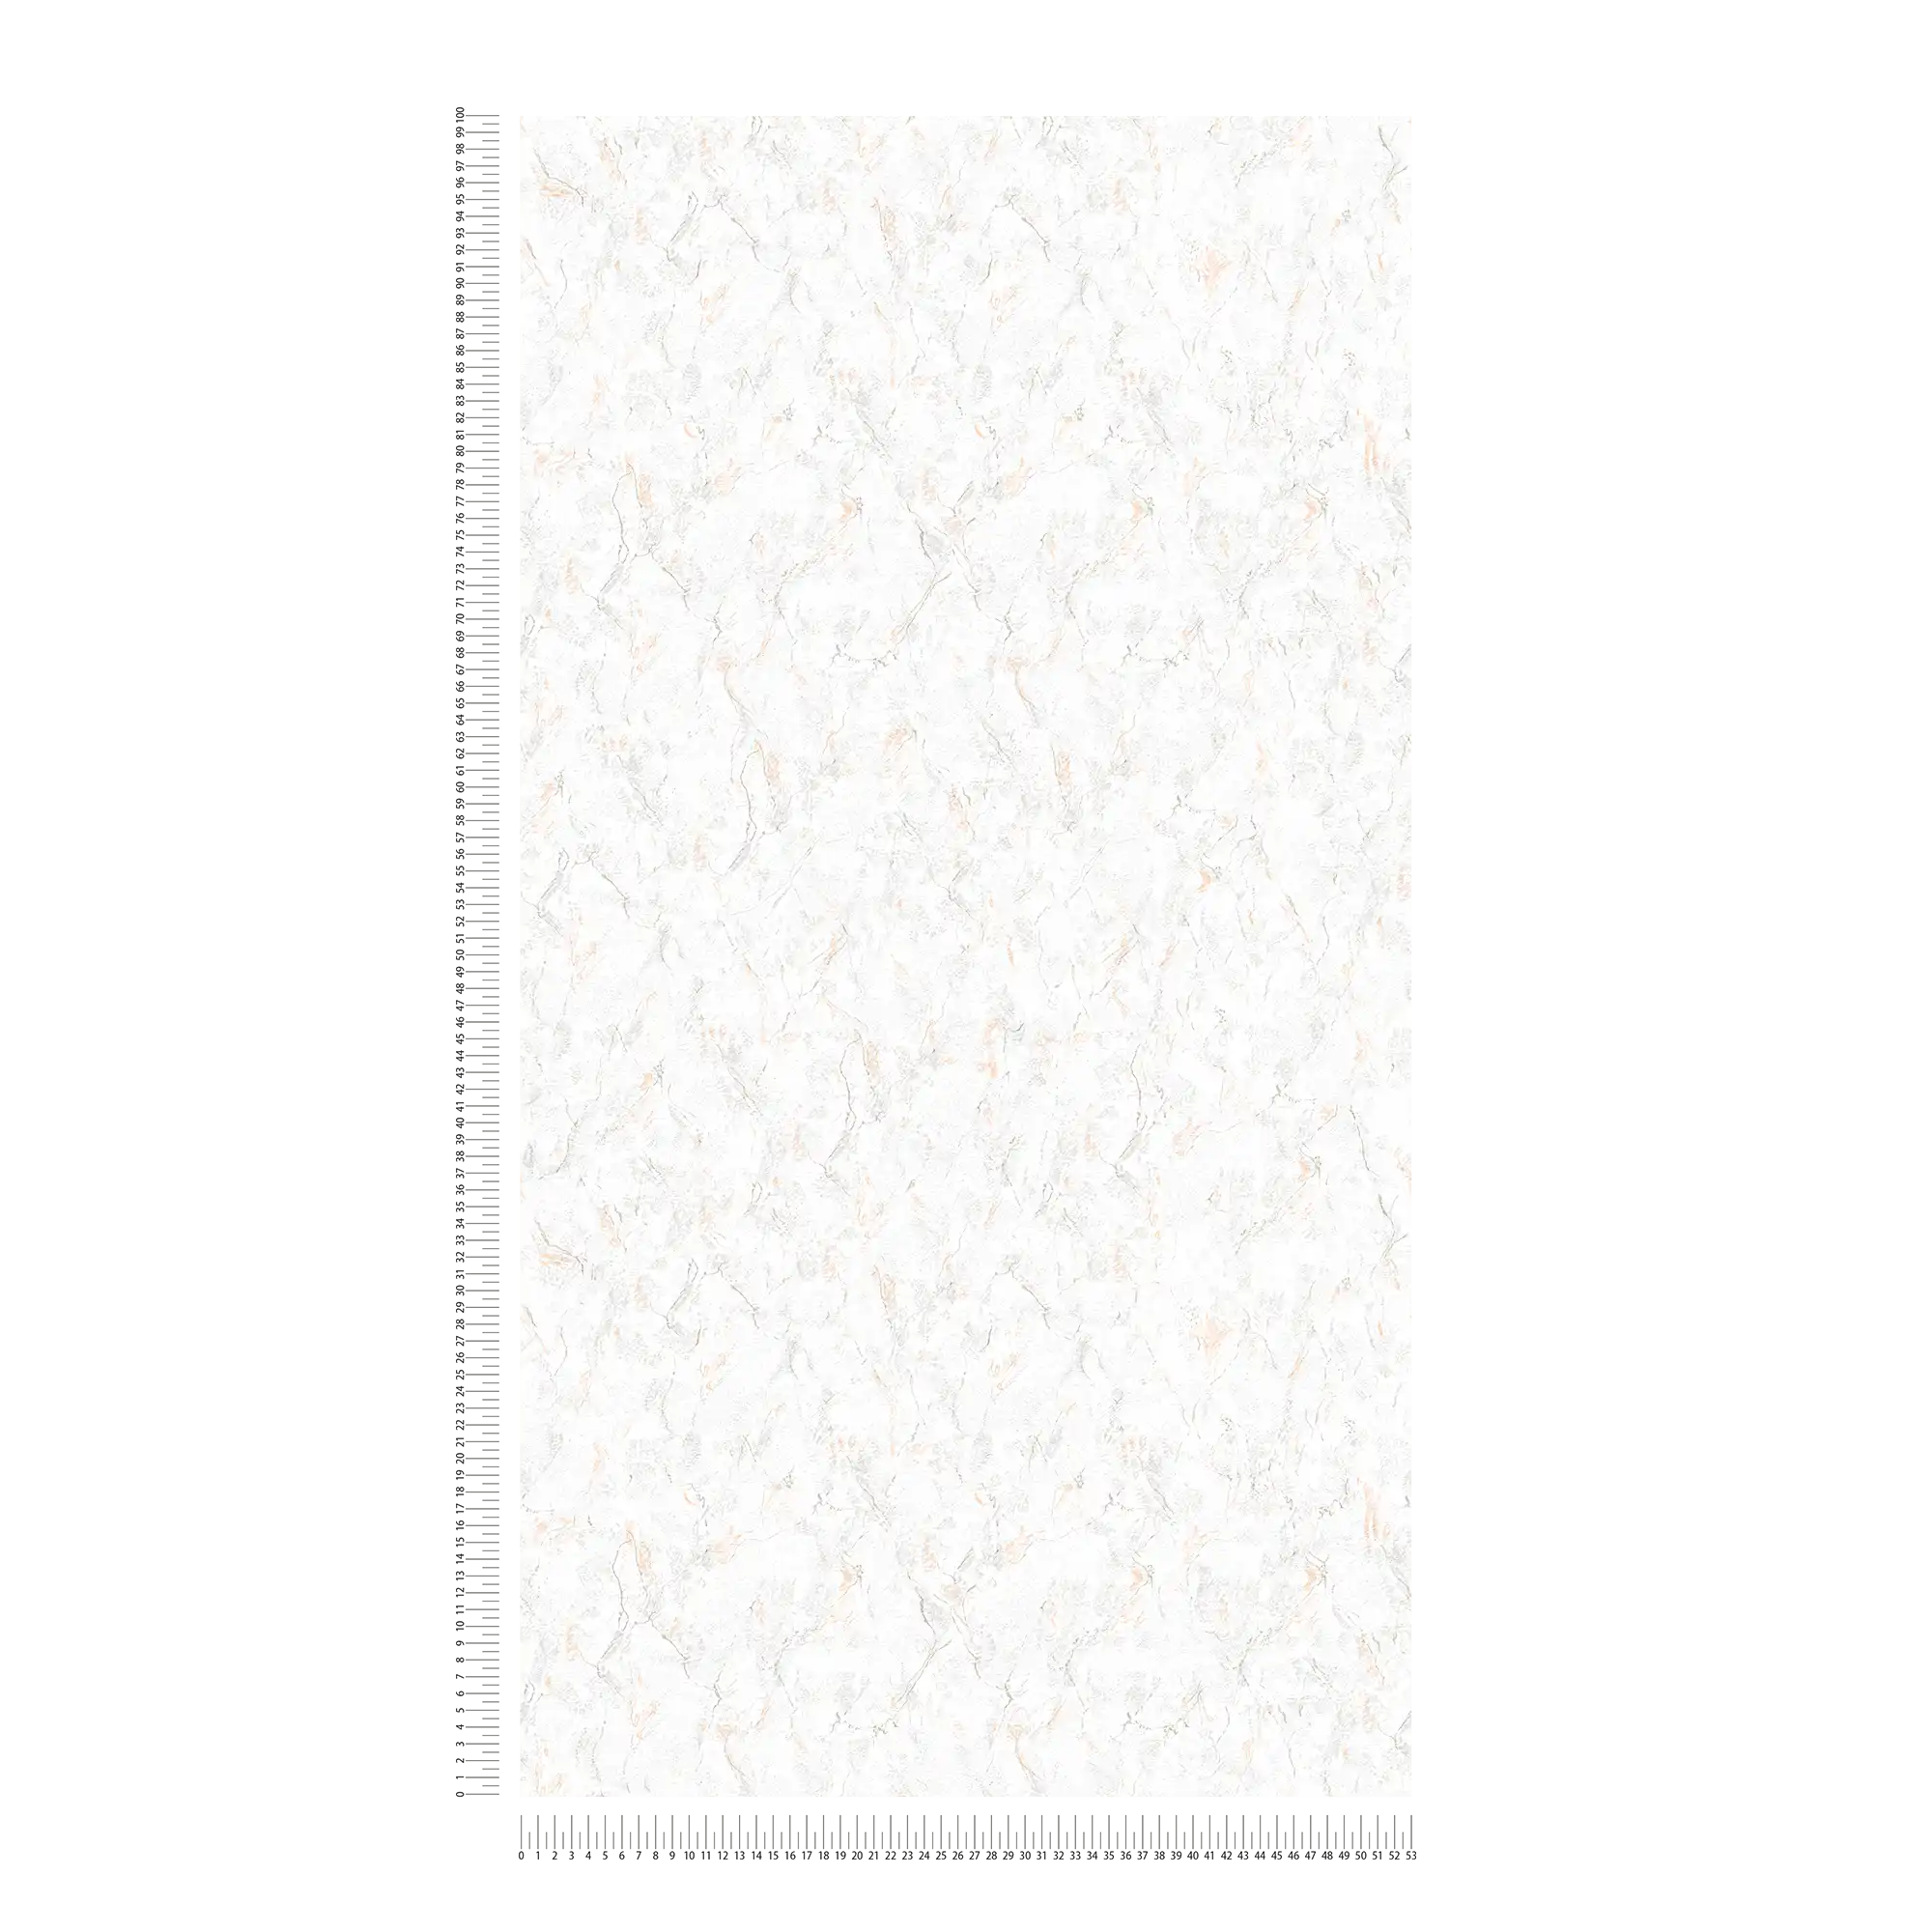             Marmorierte Tapete mit natürlicher Steinoptik – Grau, Weiß
        